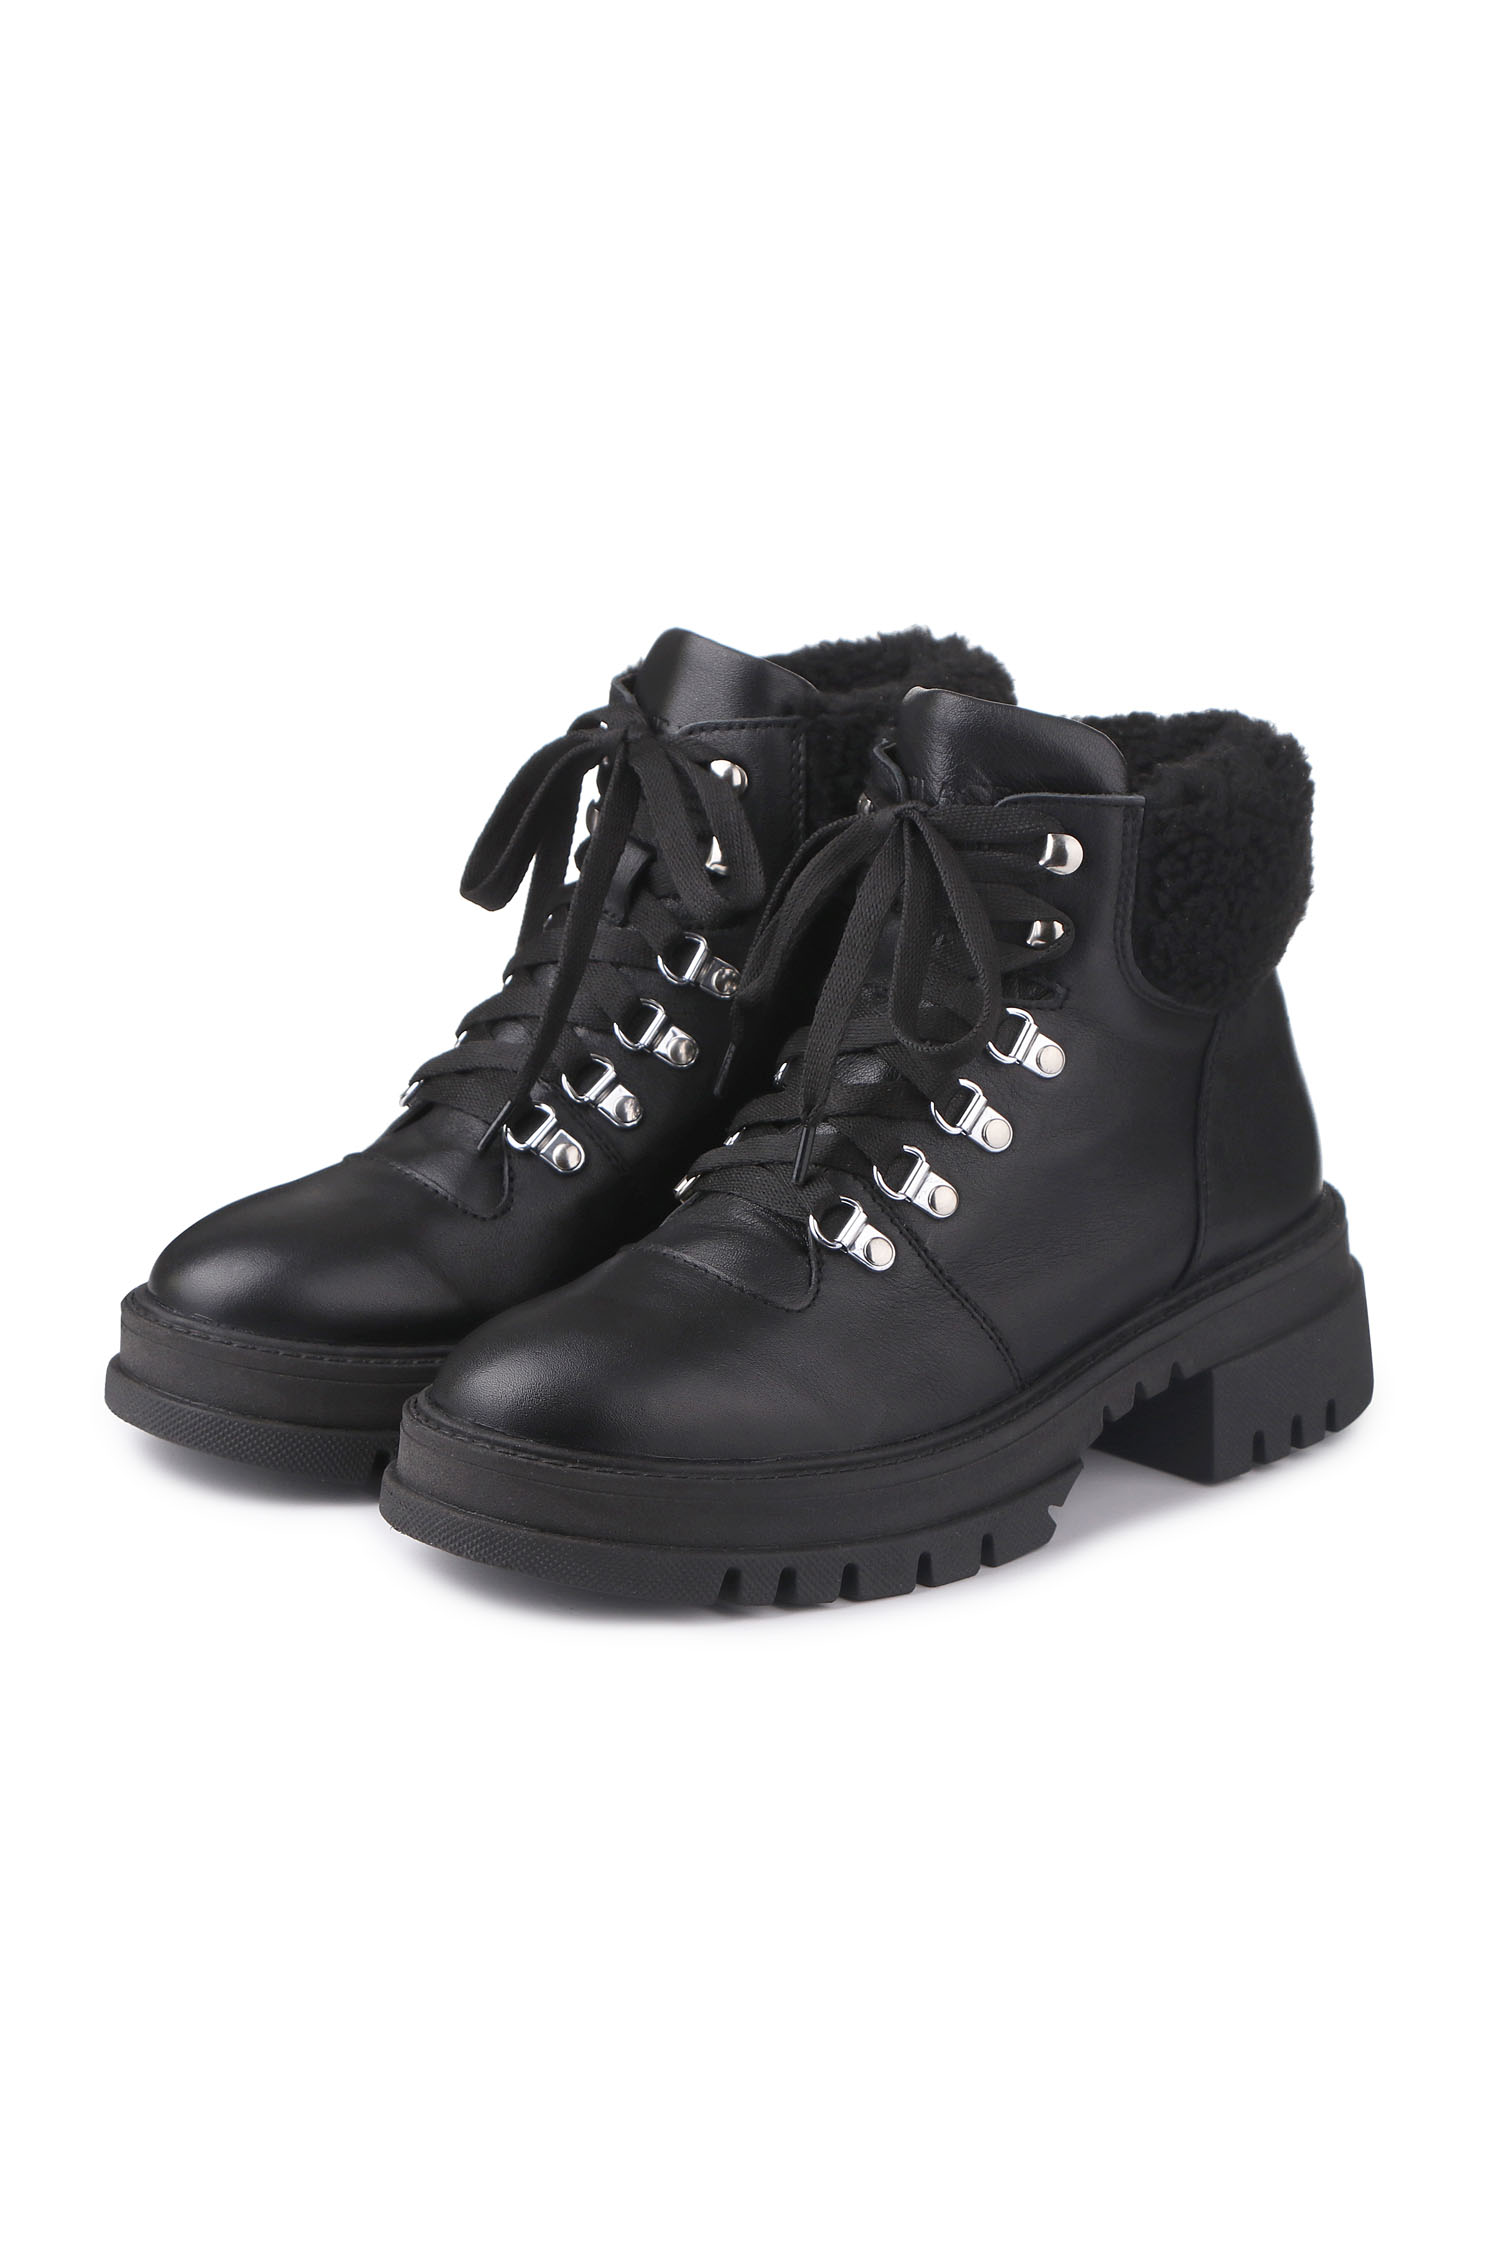 Зимові черевики Hiking boots чорні з чорним хутром - THE LACE photo 123286